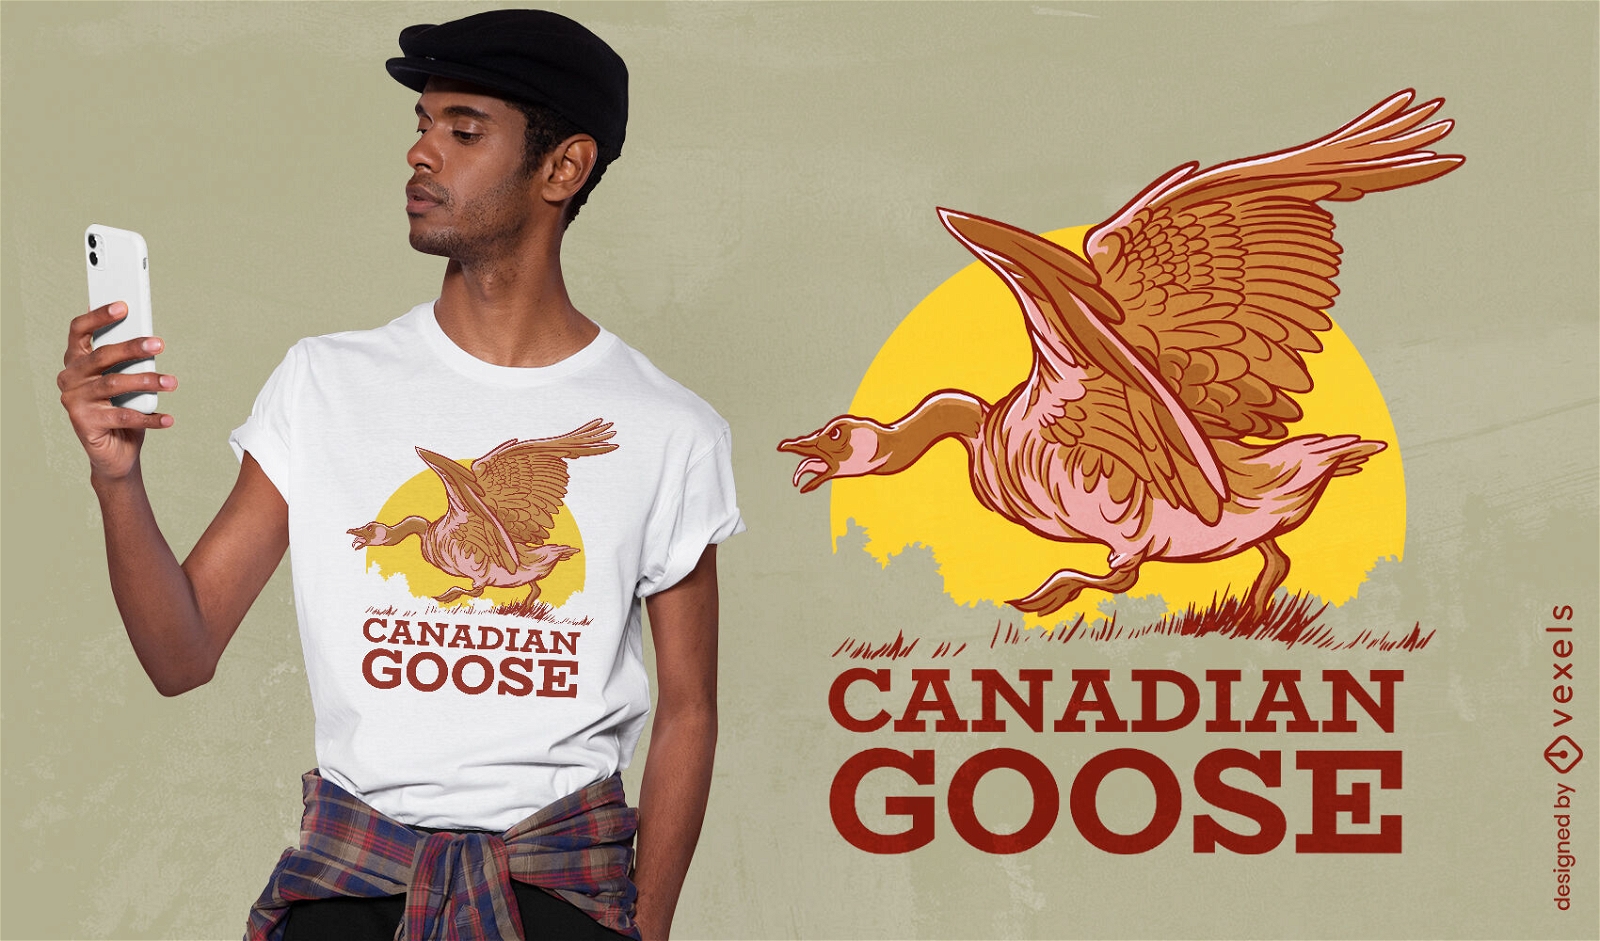 Dise?o de camiseta de animal de ganso canadiense.